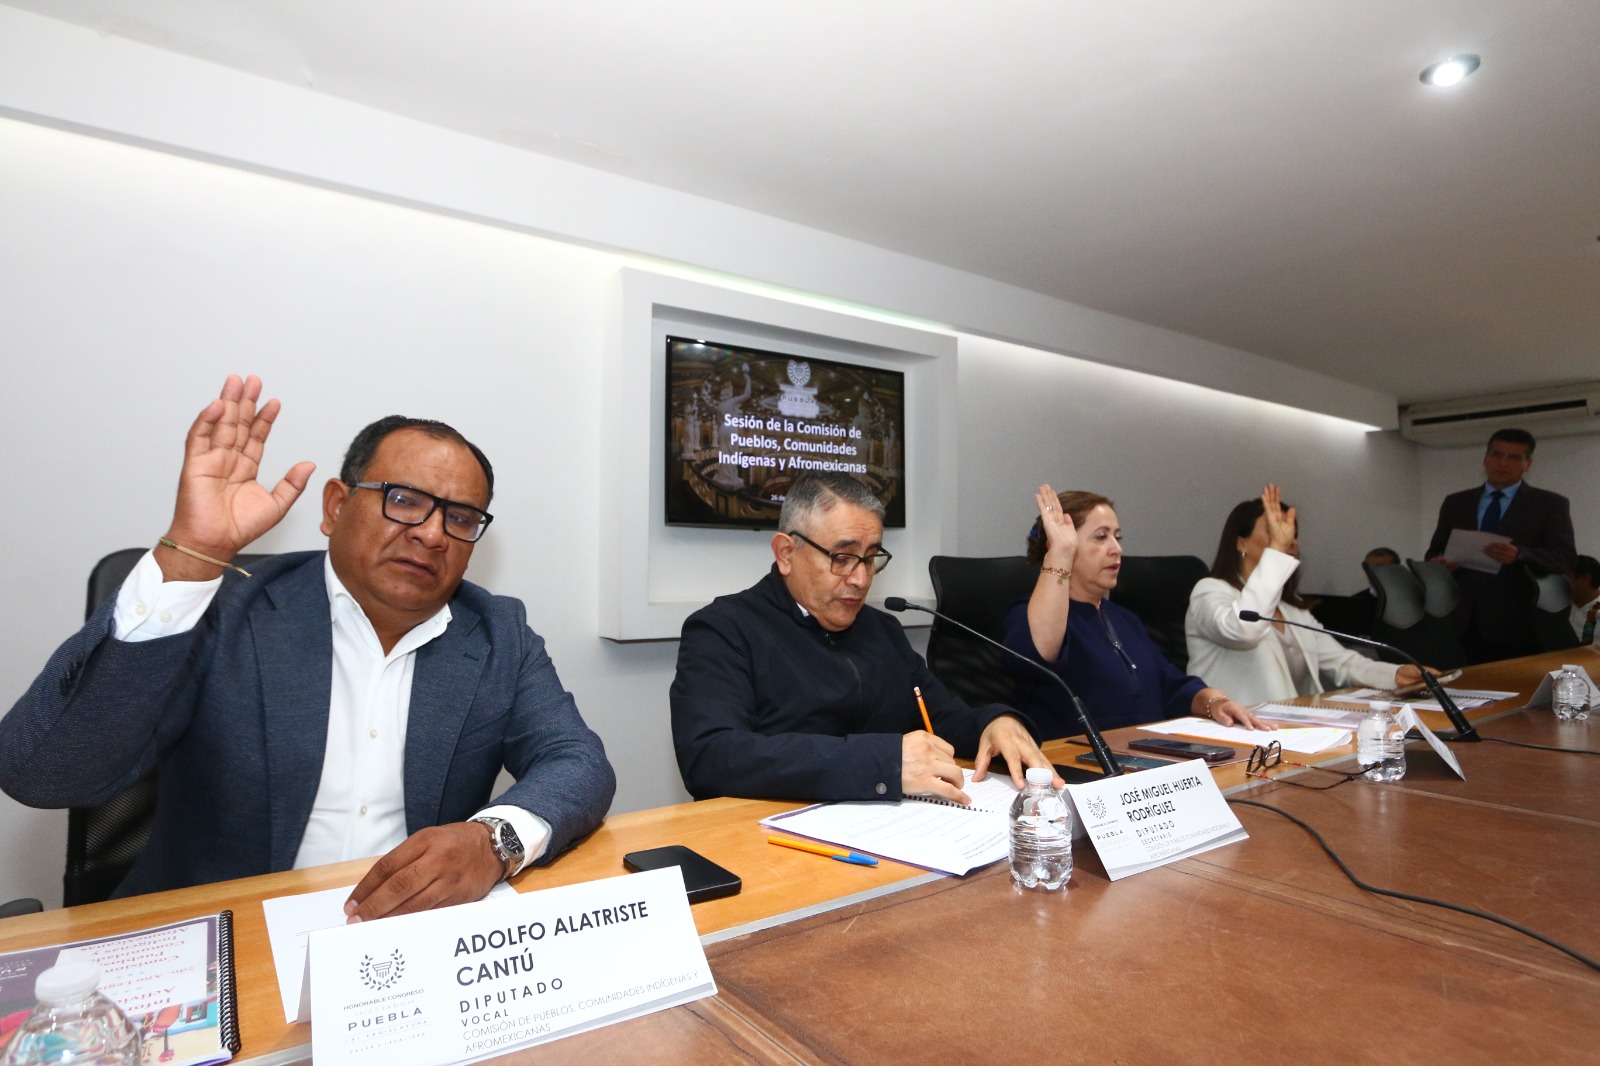 Comisión de Pueblos, Comunidades Indígenas y Afromexicanas presenta Informe Anual de Trabajo